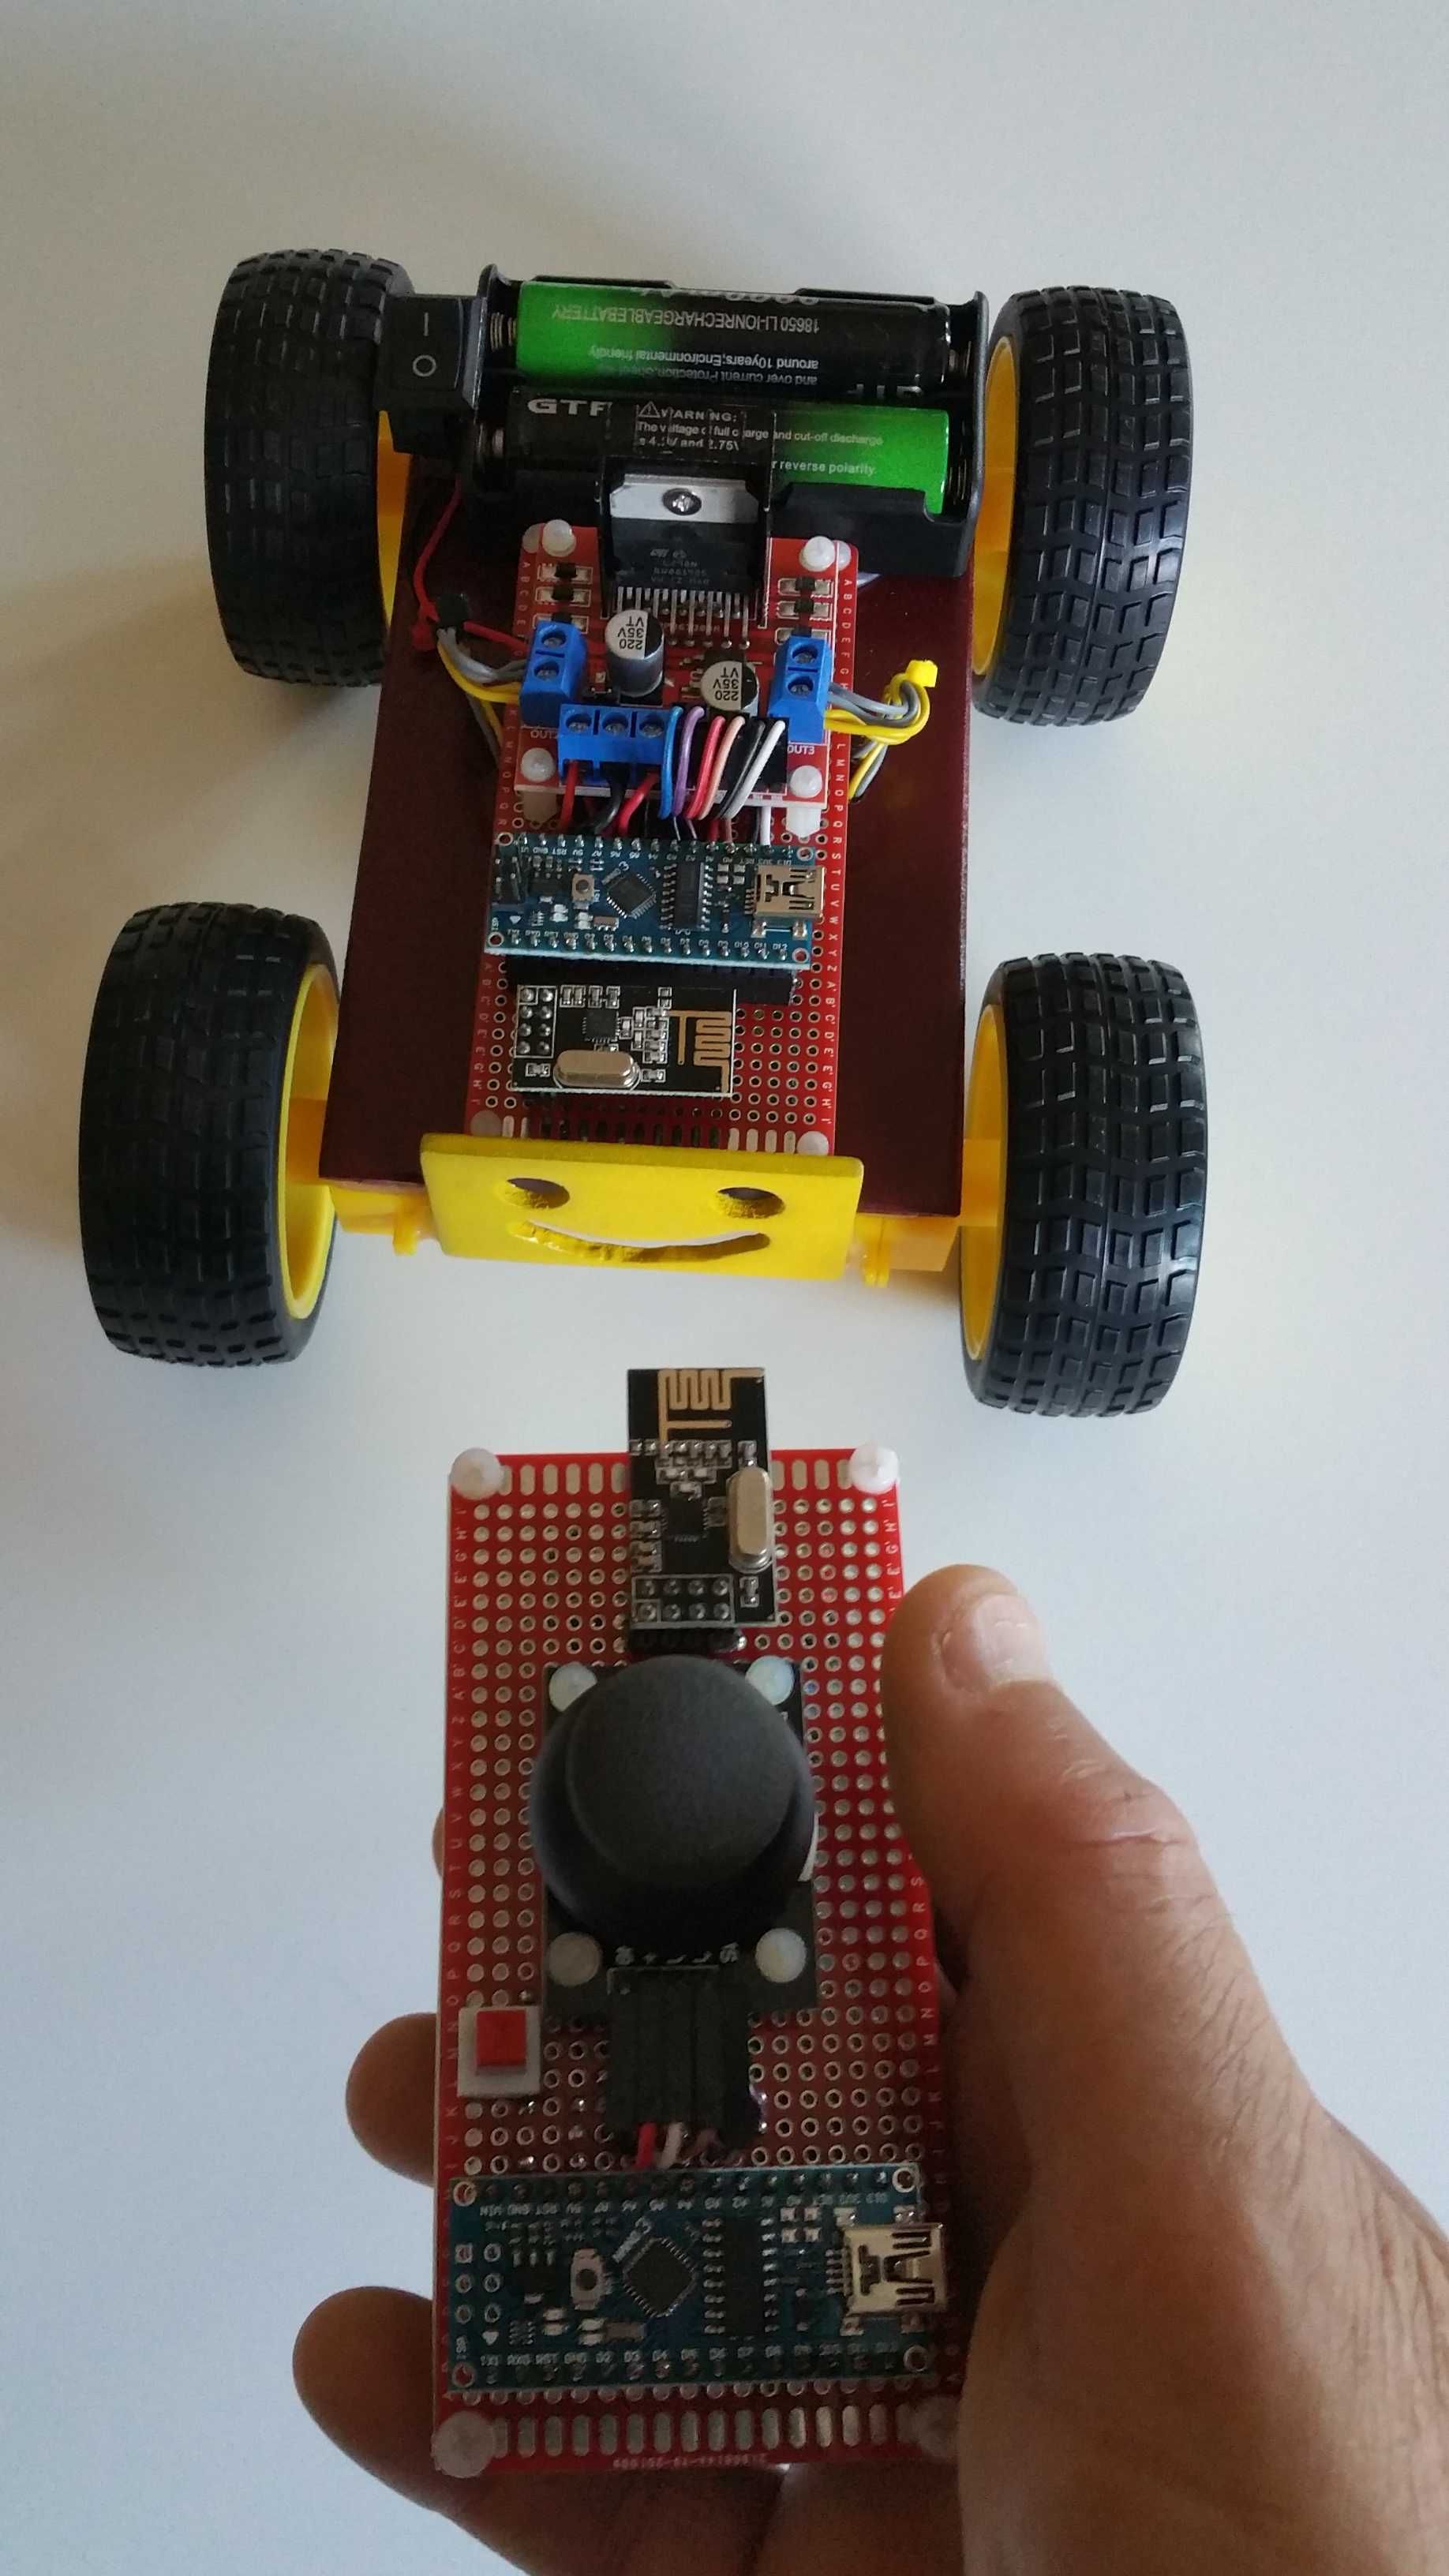 Carro Robot Educacional Arduino programado controlado por Joystick.